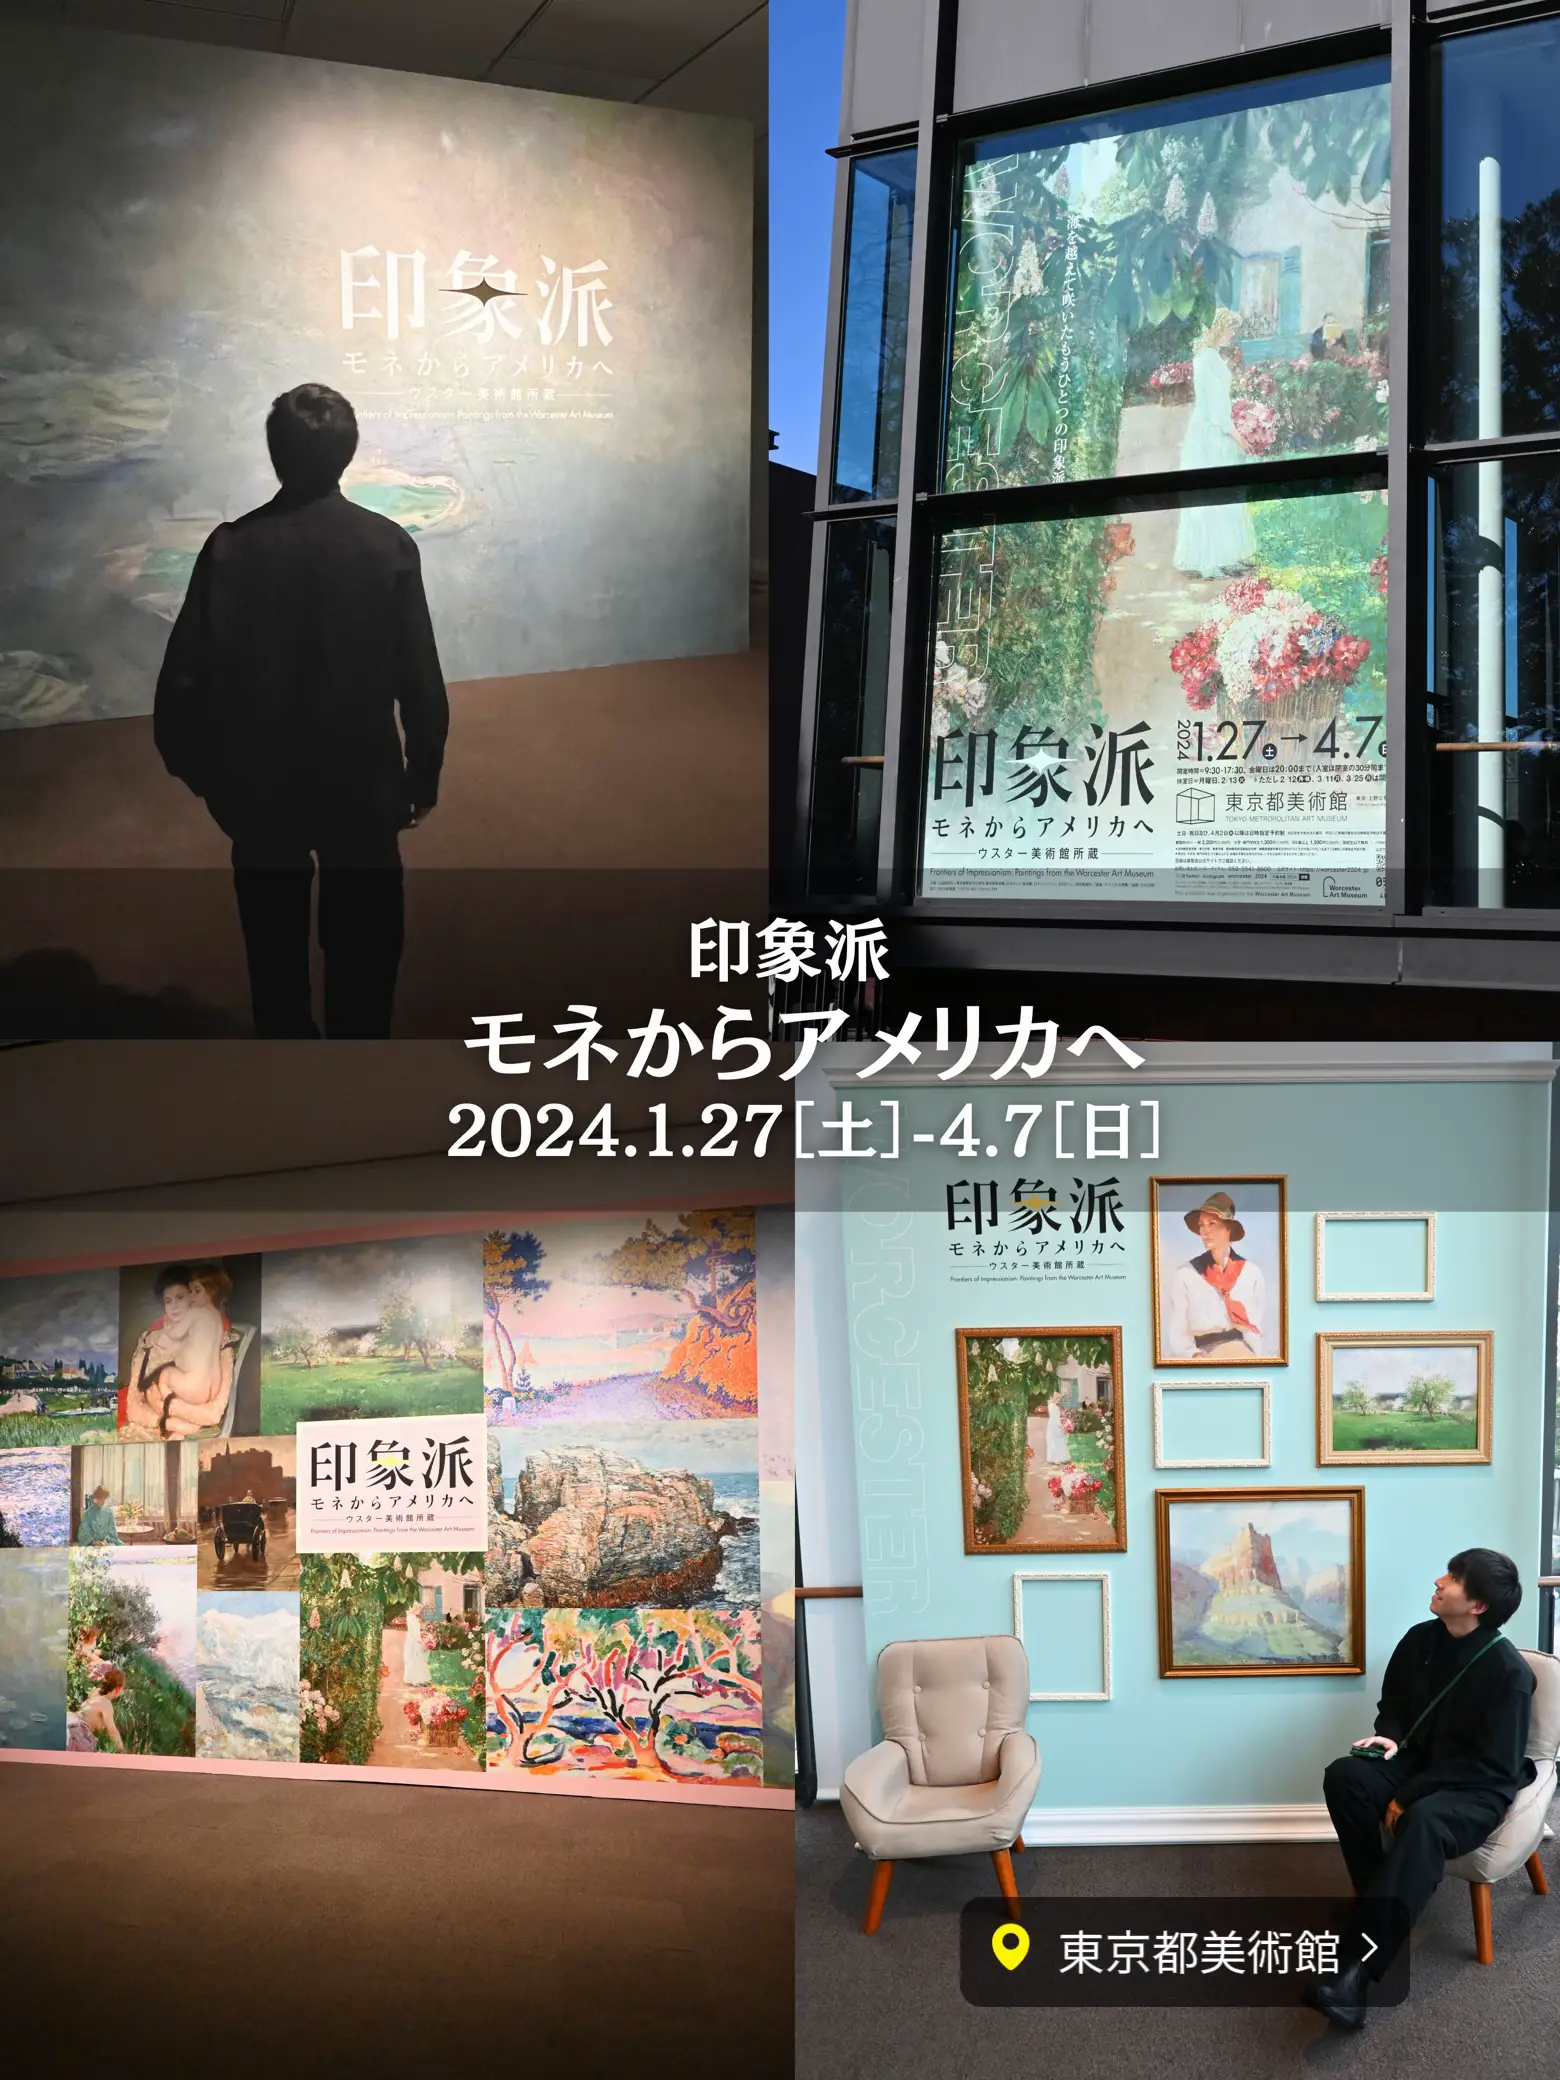 東京都美術館 印象派 モネからアメリカへ - 美術館・博物館